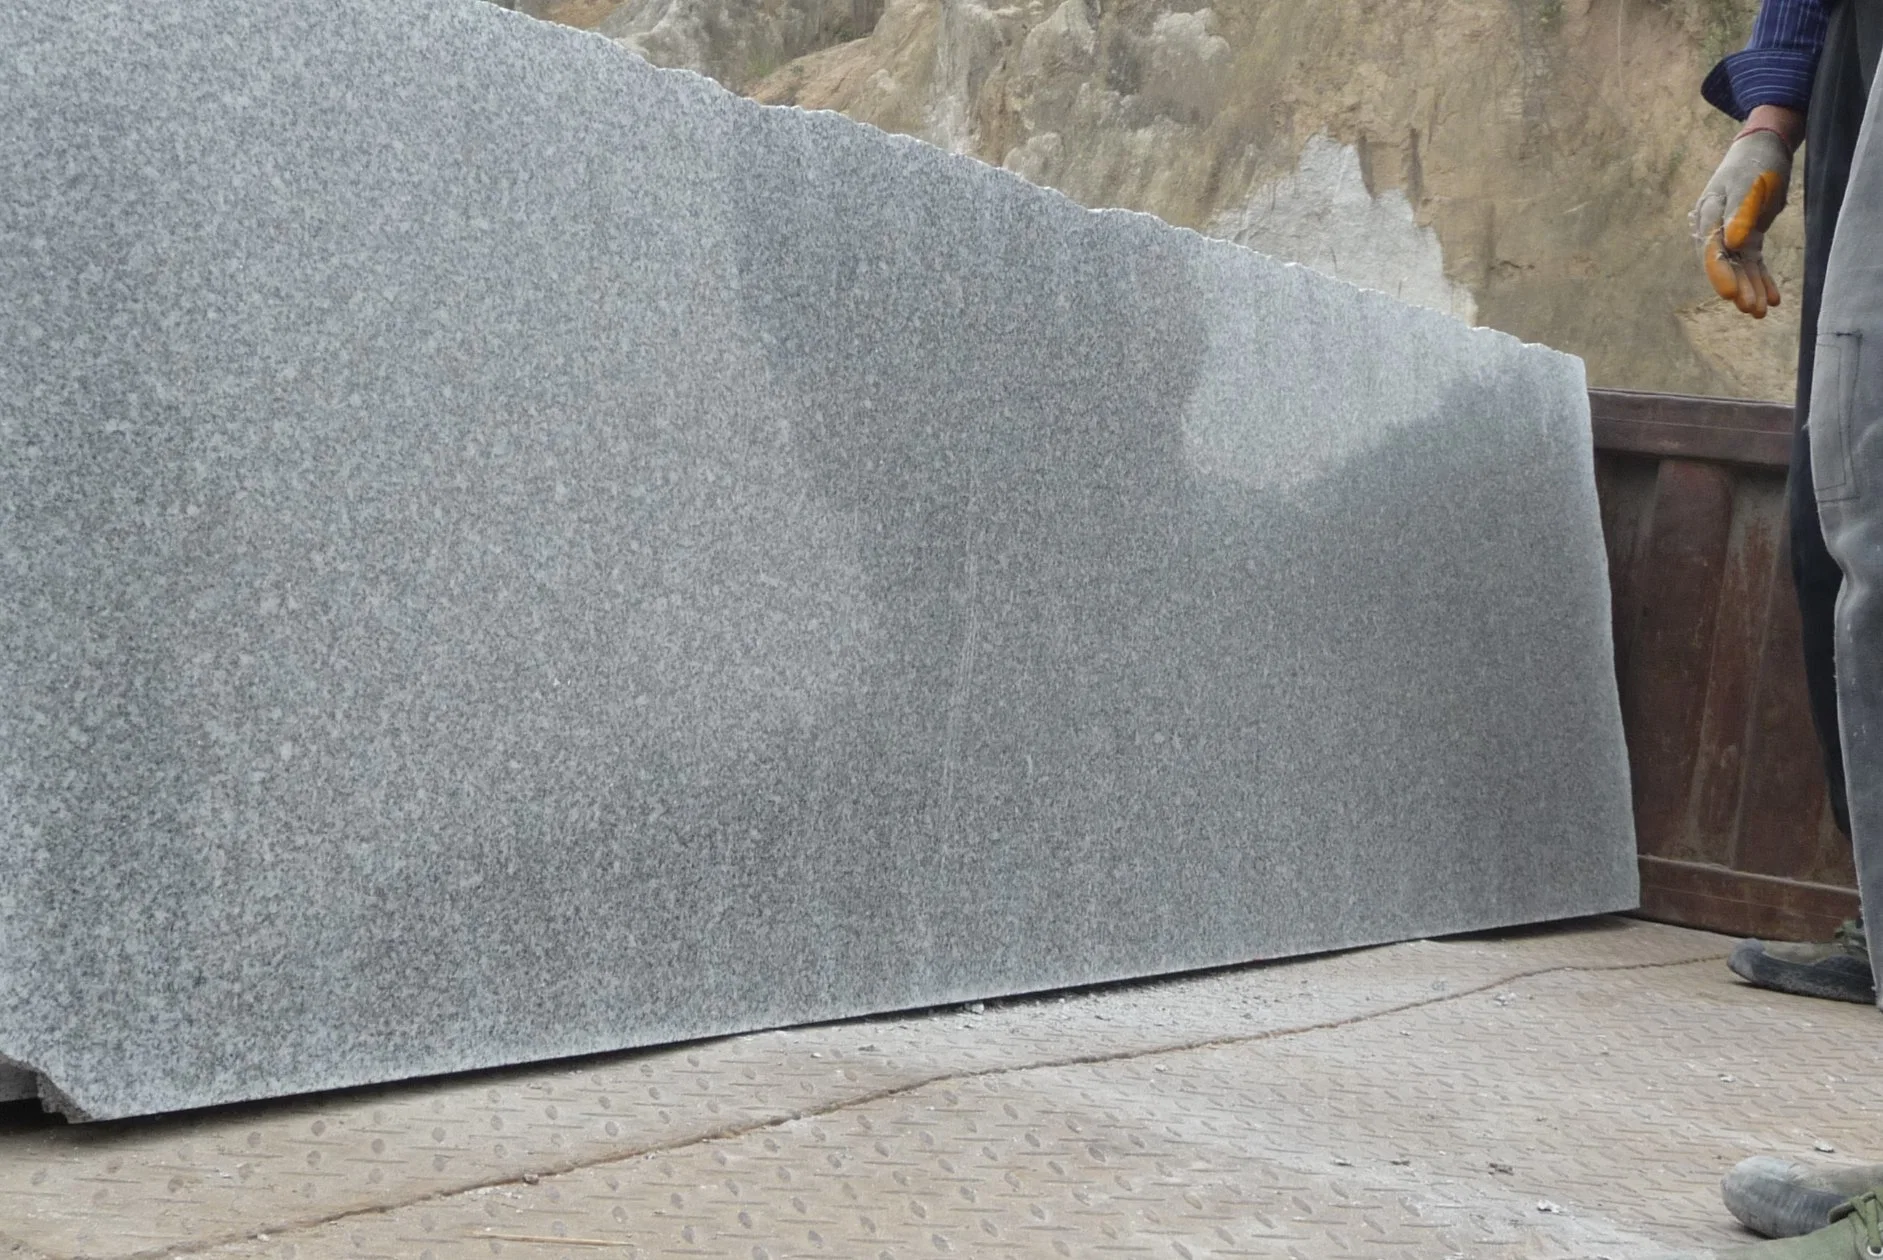 Piso de granito natural suelos de baldosas de pared cocina encimera frenar empedrado